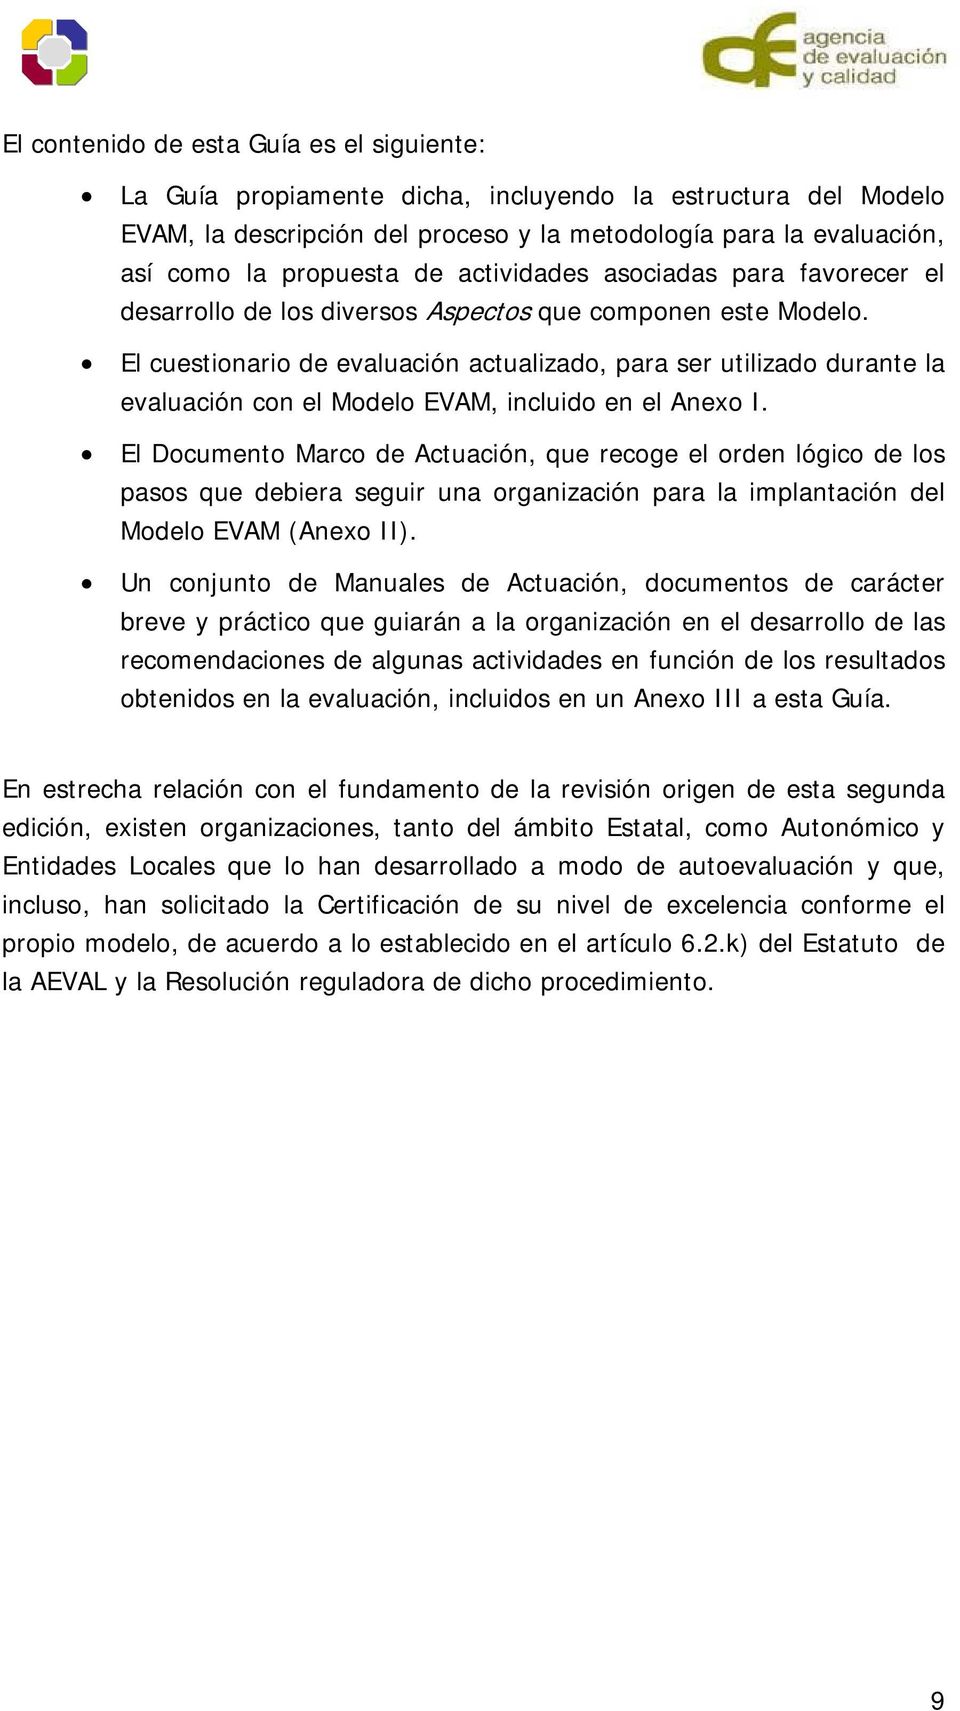 El cuestionario de evaluación actualizado, para ser utilizado durante la evaluación con el Modelo EVAM, incluido en el Anexo I.